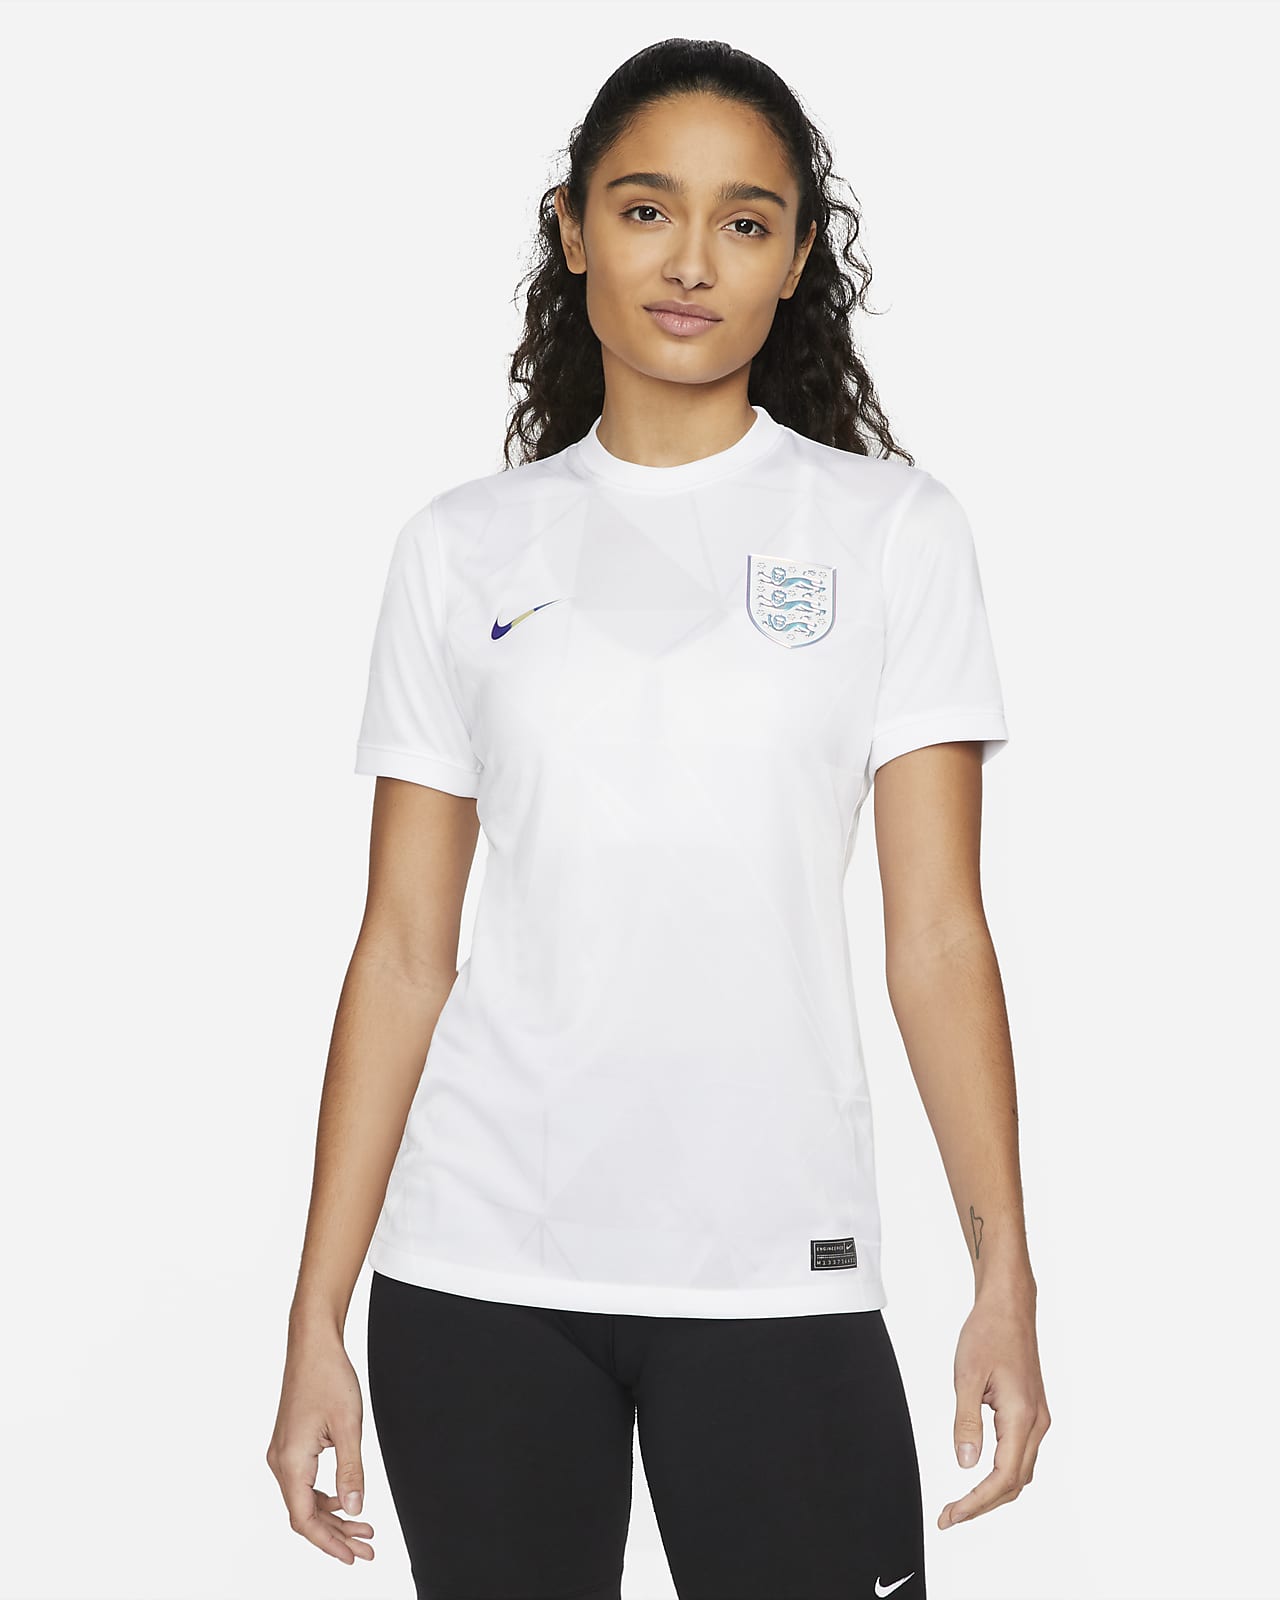 england women's team shirt